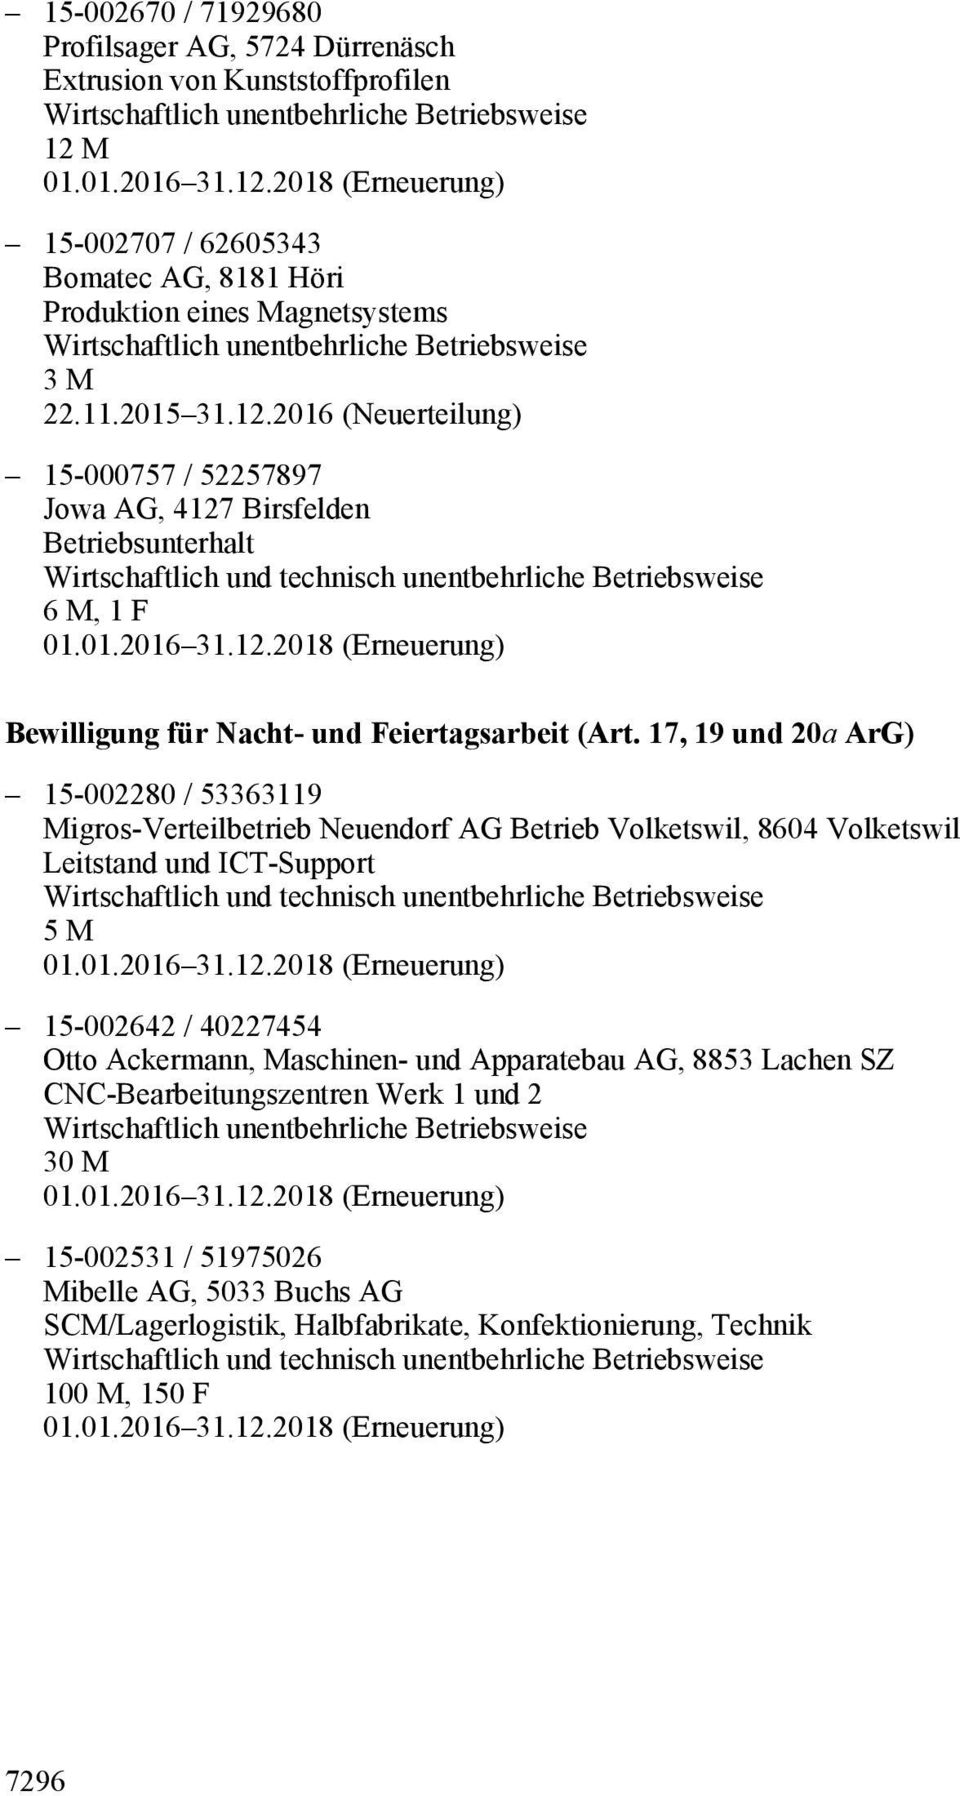 17, 19 und 20a ArG) 15-002280 / 53363119 Migros-Verteilbetrieb Neuendorf AG Betrieb Volketswil, 8604 Volketswil Leitstand und ICT-Support 5 M 15-002642 / 40227454 Otto Ackermann,